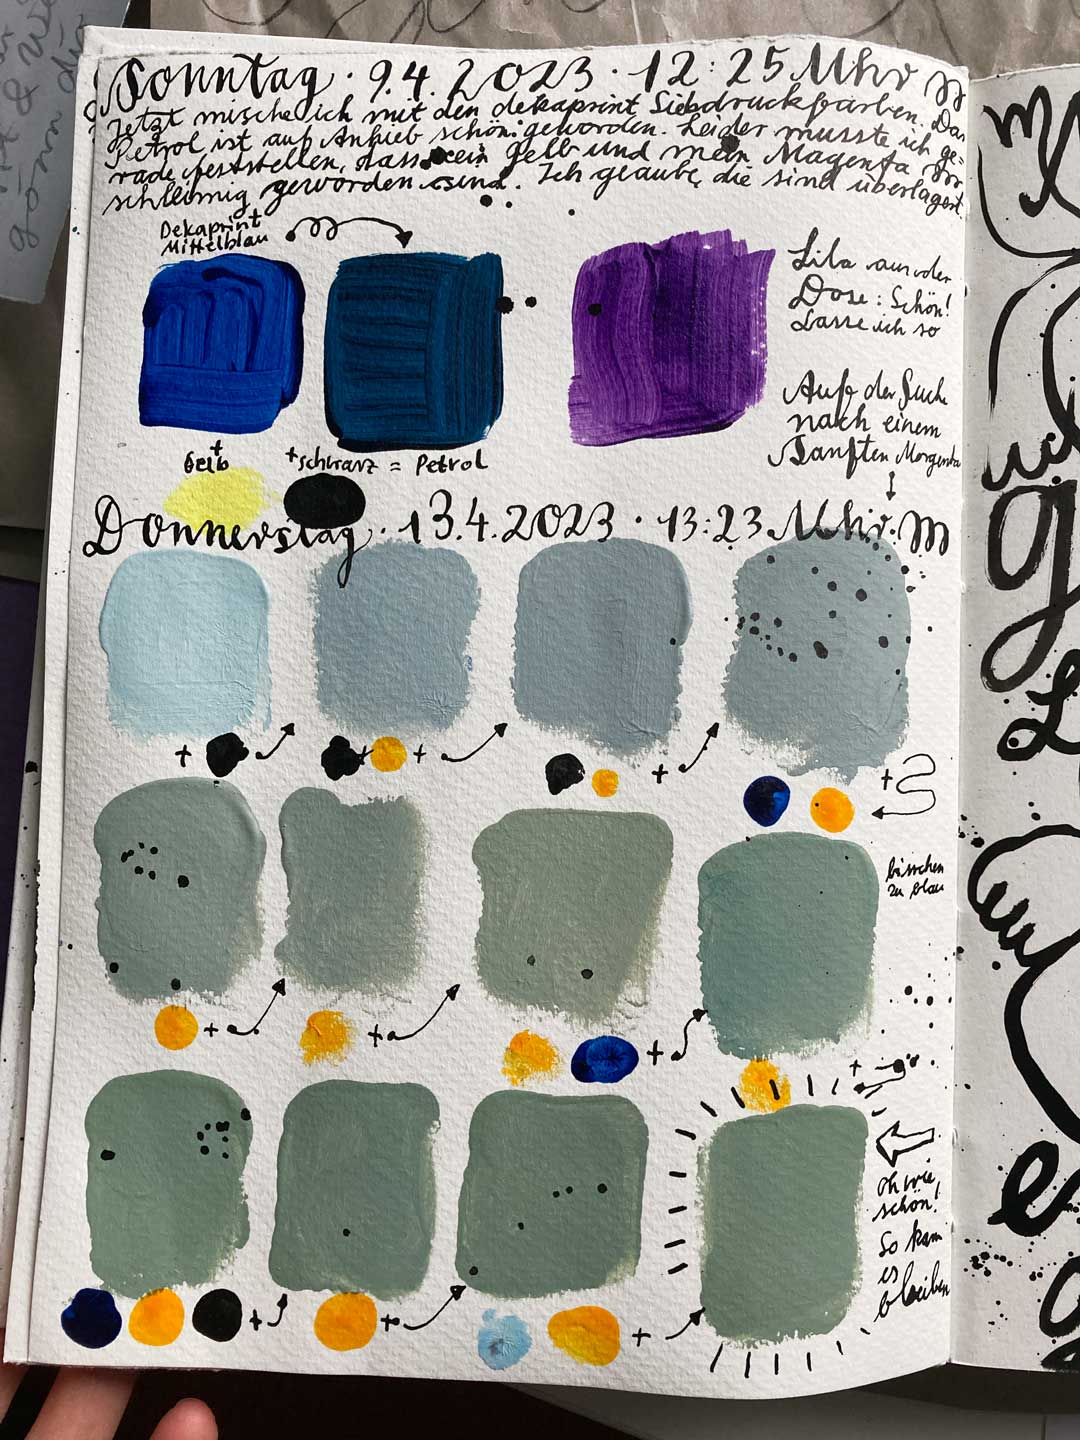 Eine Seite aus Tabea Heinickers Skizzenbuch. Farb- und Mischproben sind zu erkennen. Tadieschen im Siebdruck habe ich im Skizzenbuch gründlich vorbereitet.